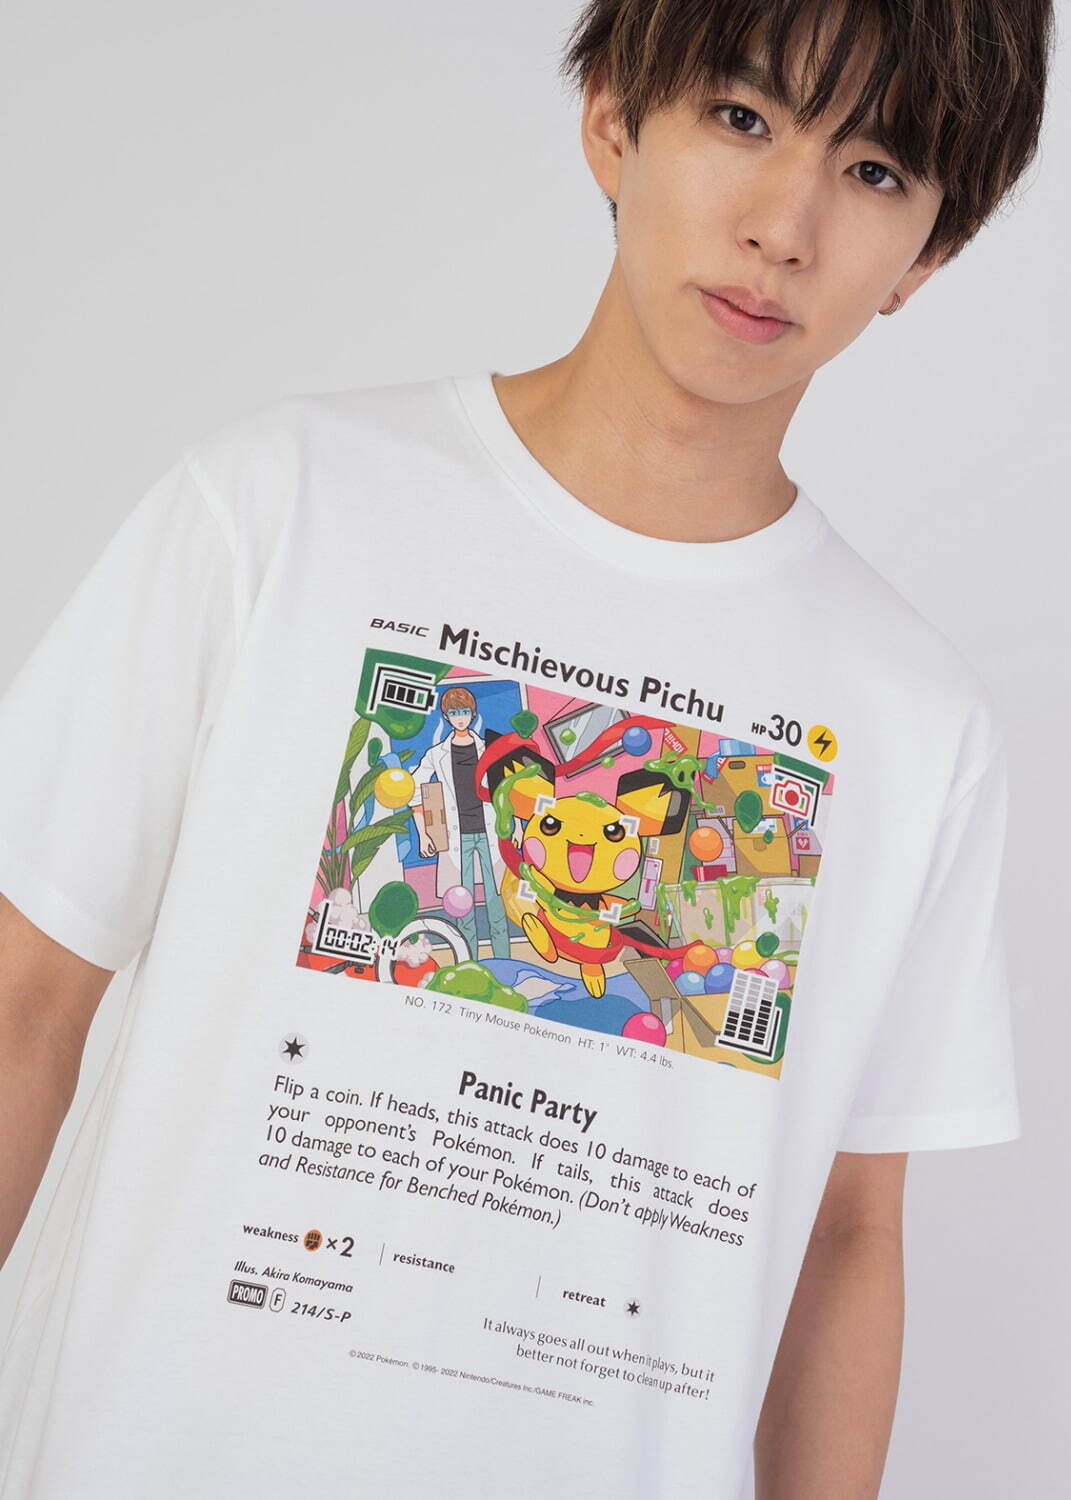 Tシャツ「いたずら好きのピチュー」2,500円